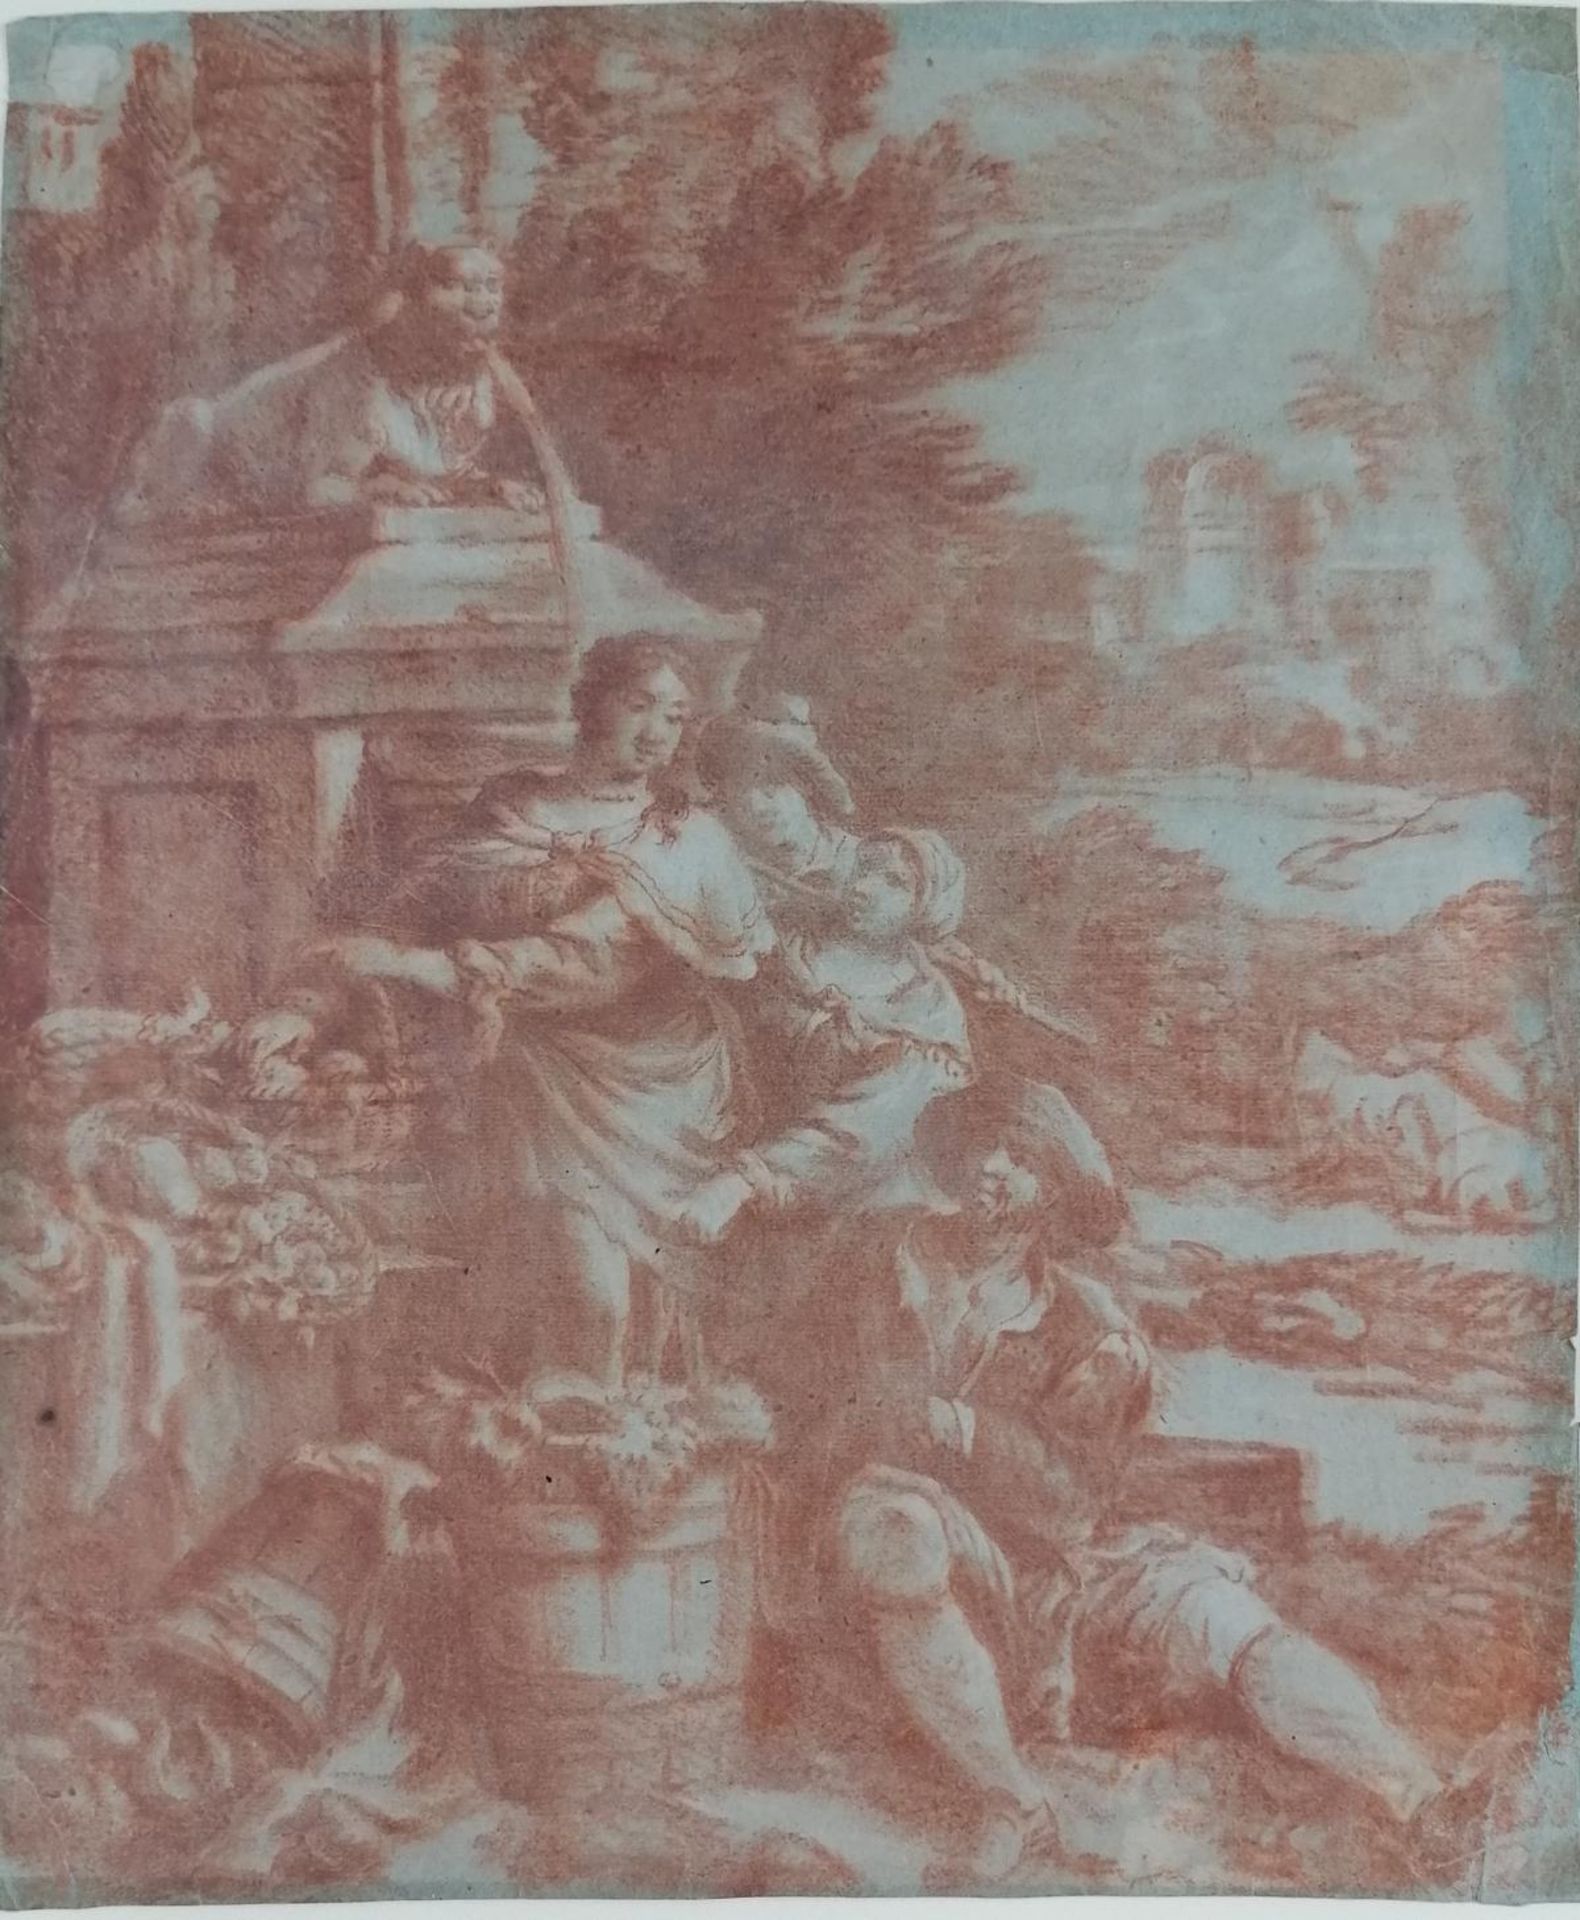 Rötelzeichnung wohl flämisch, 17./18. Jahrhundert - Image 2 of 5